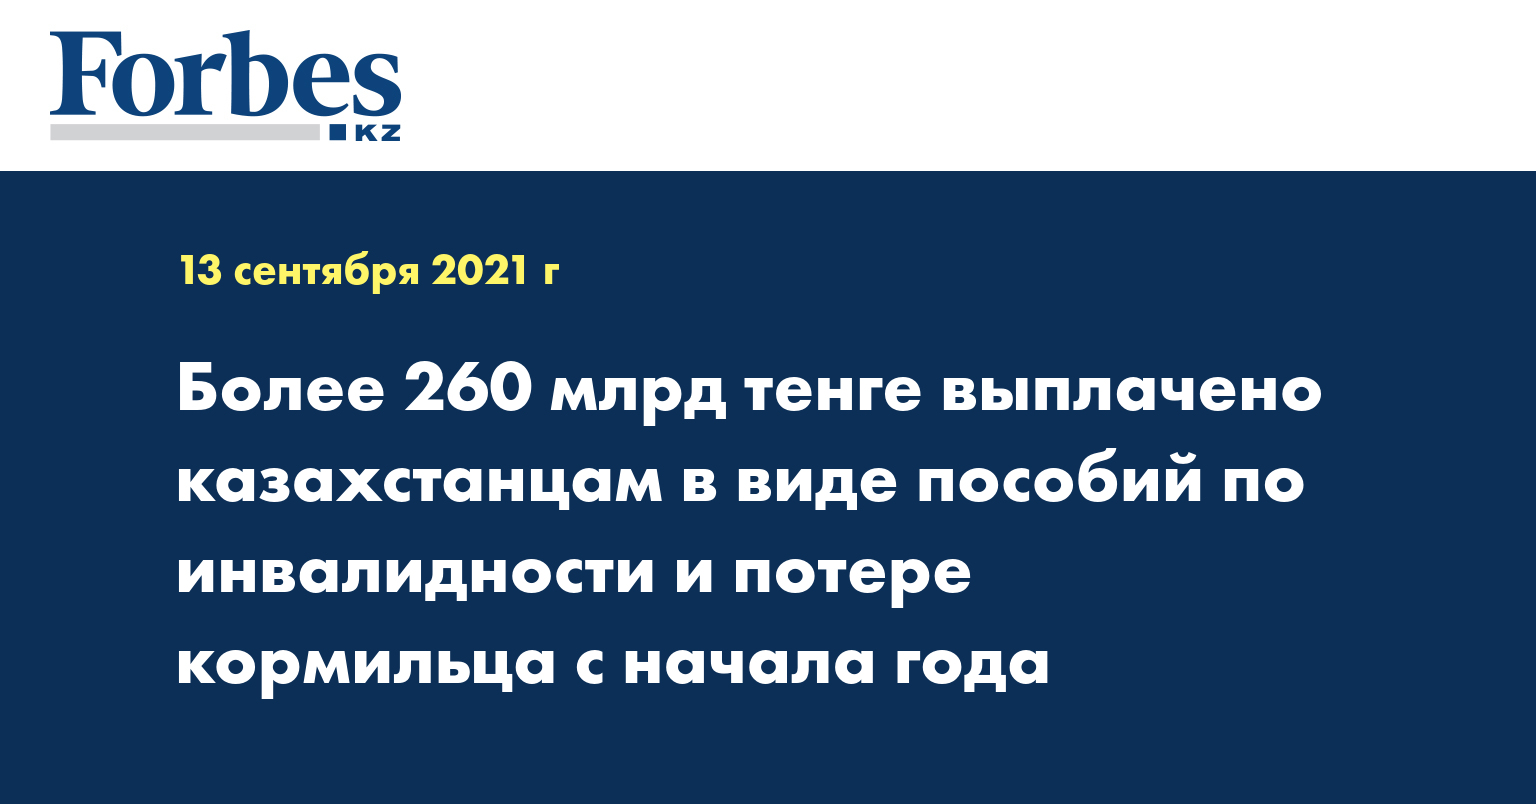 Более 260 млрд тенге выплачено казахстанцам в виде пособий по инвалидности и потере кормильца с начала года